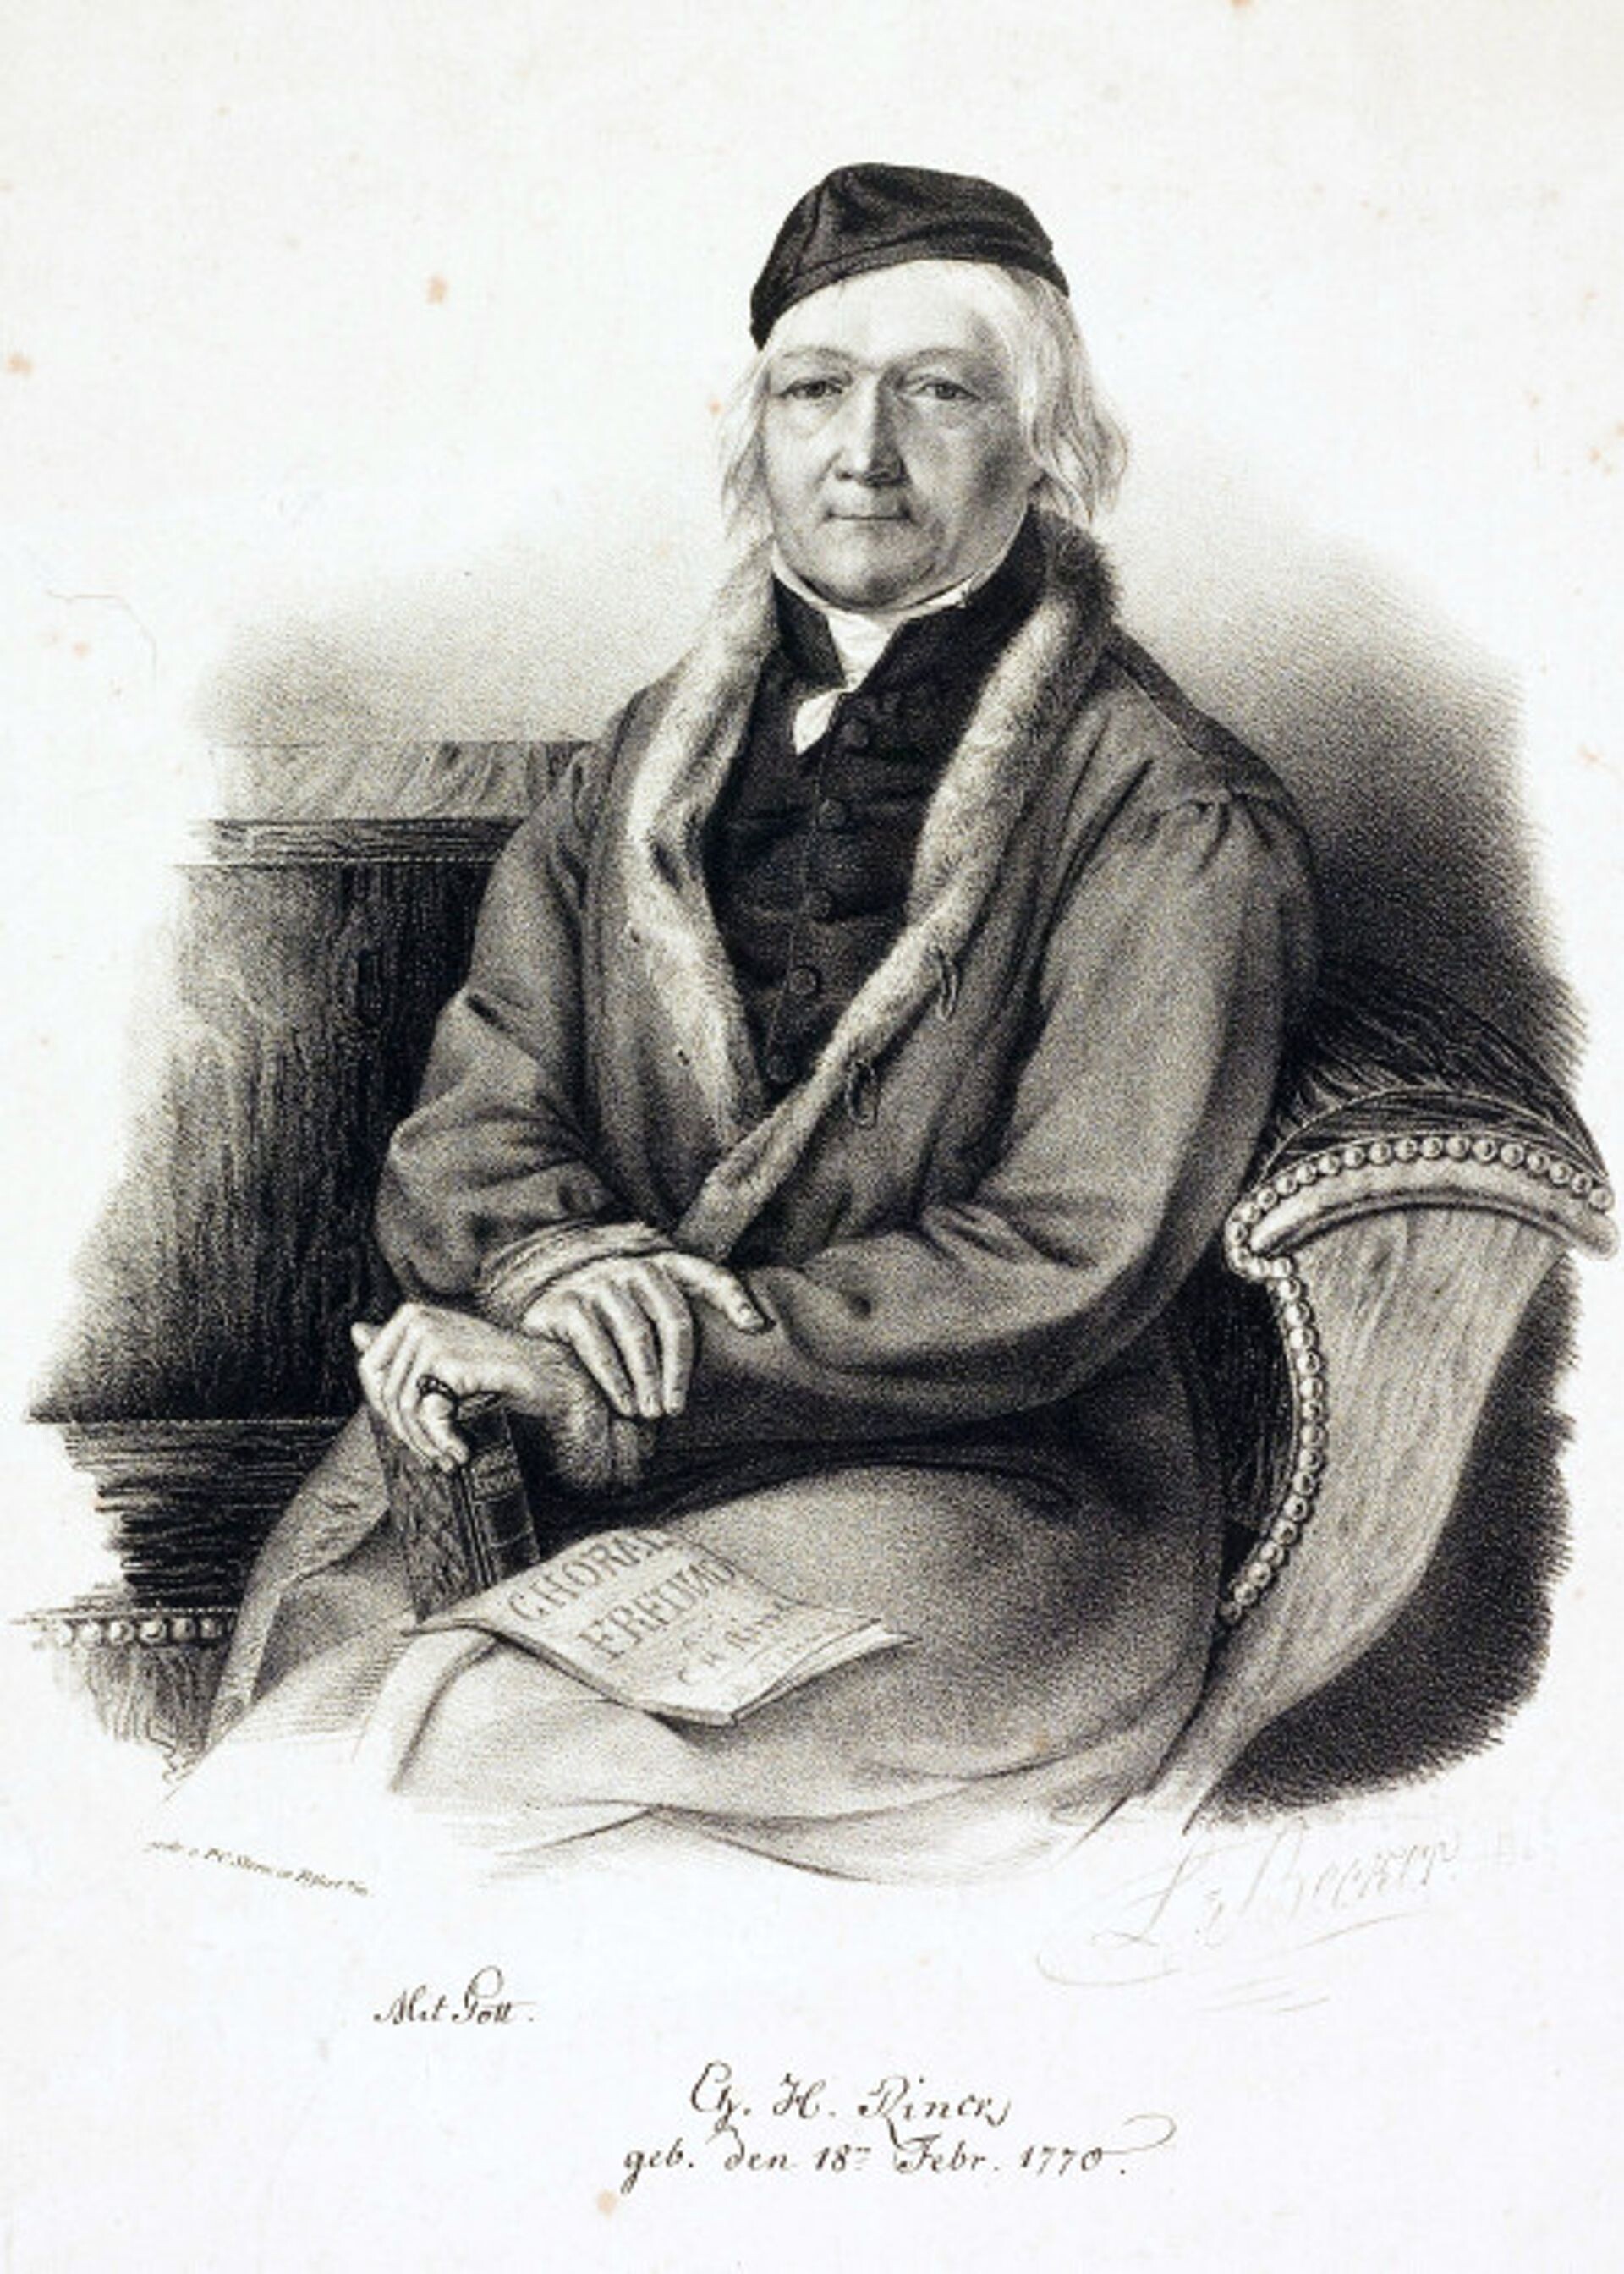 Geboren in 1770: Johann Christian Heinrich Rinck